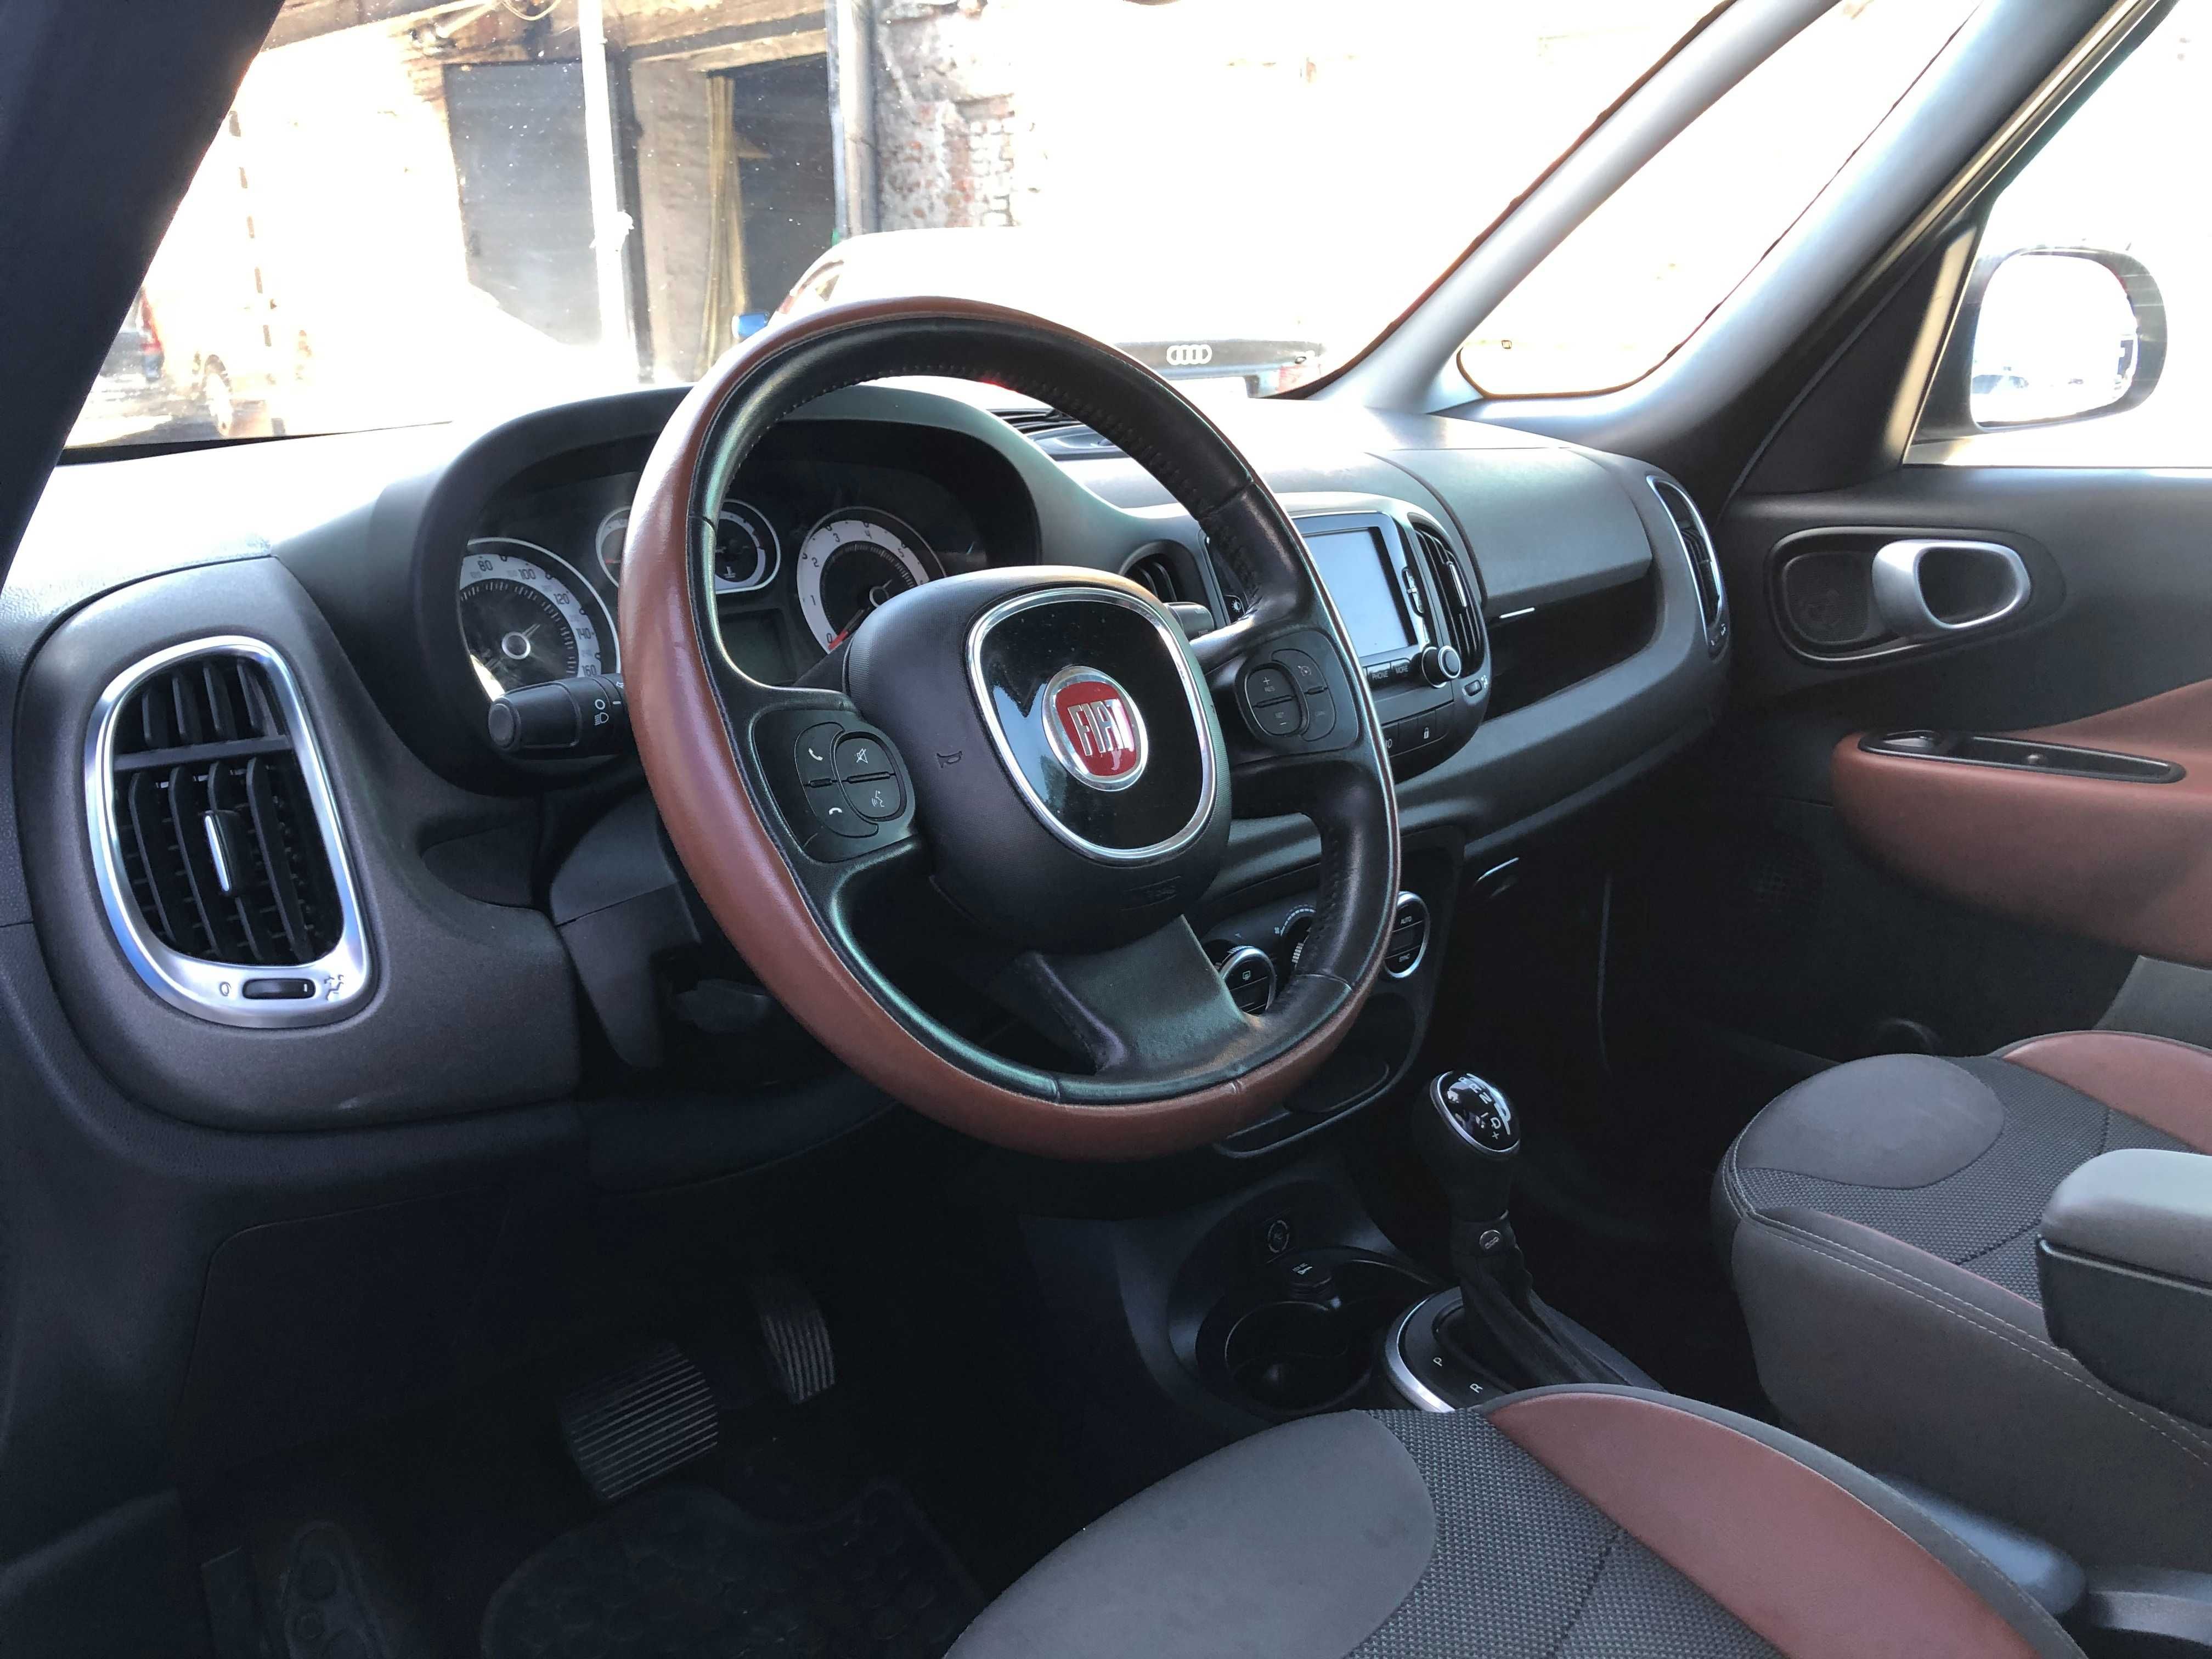 Продам Fiat 500L 1.4 ГАз-Бензин 120 л.с. на автомате 2015 года.